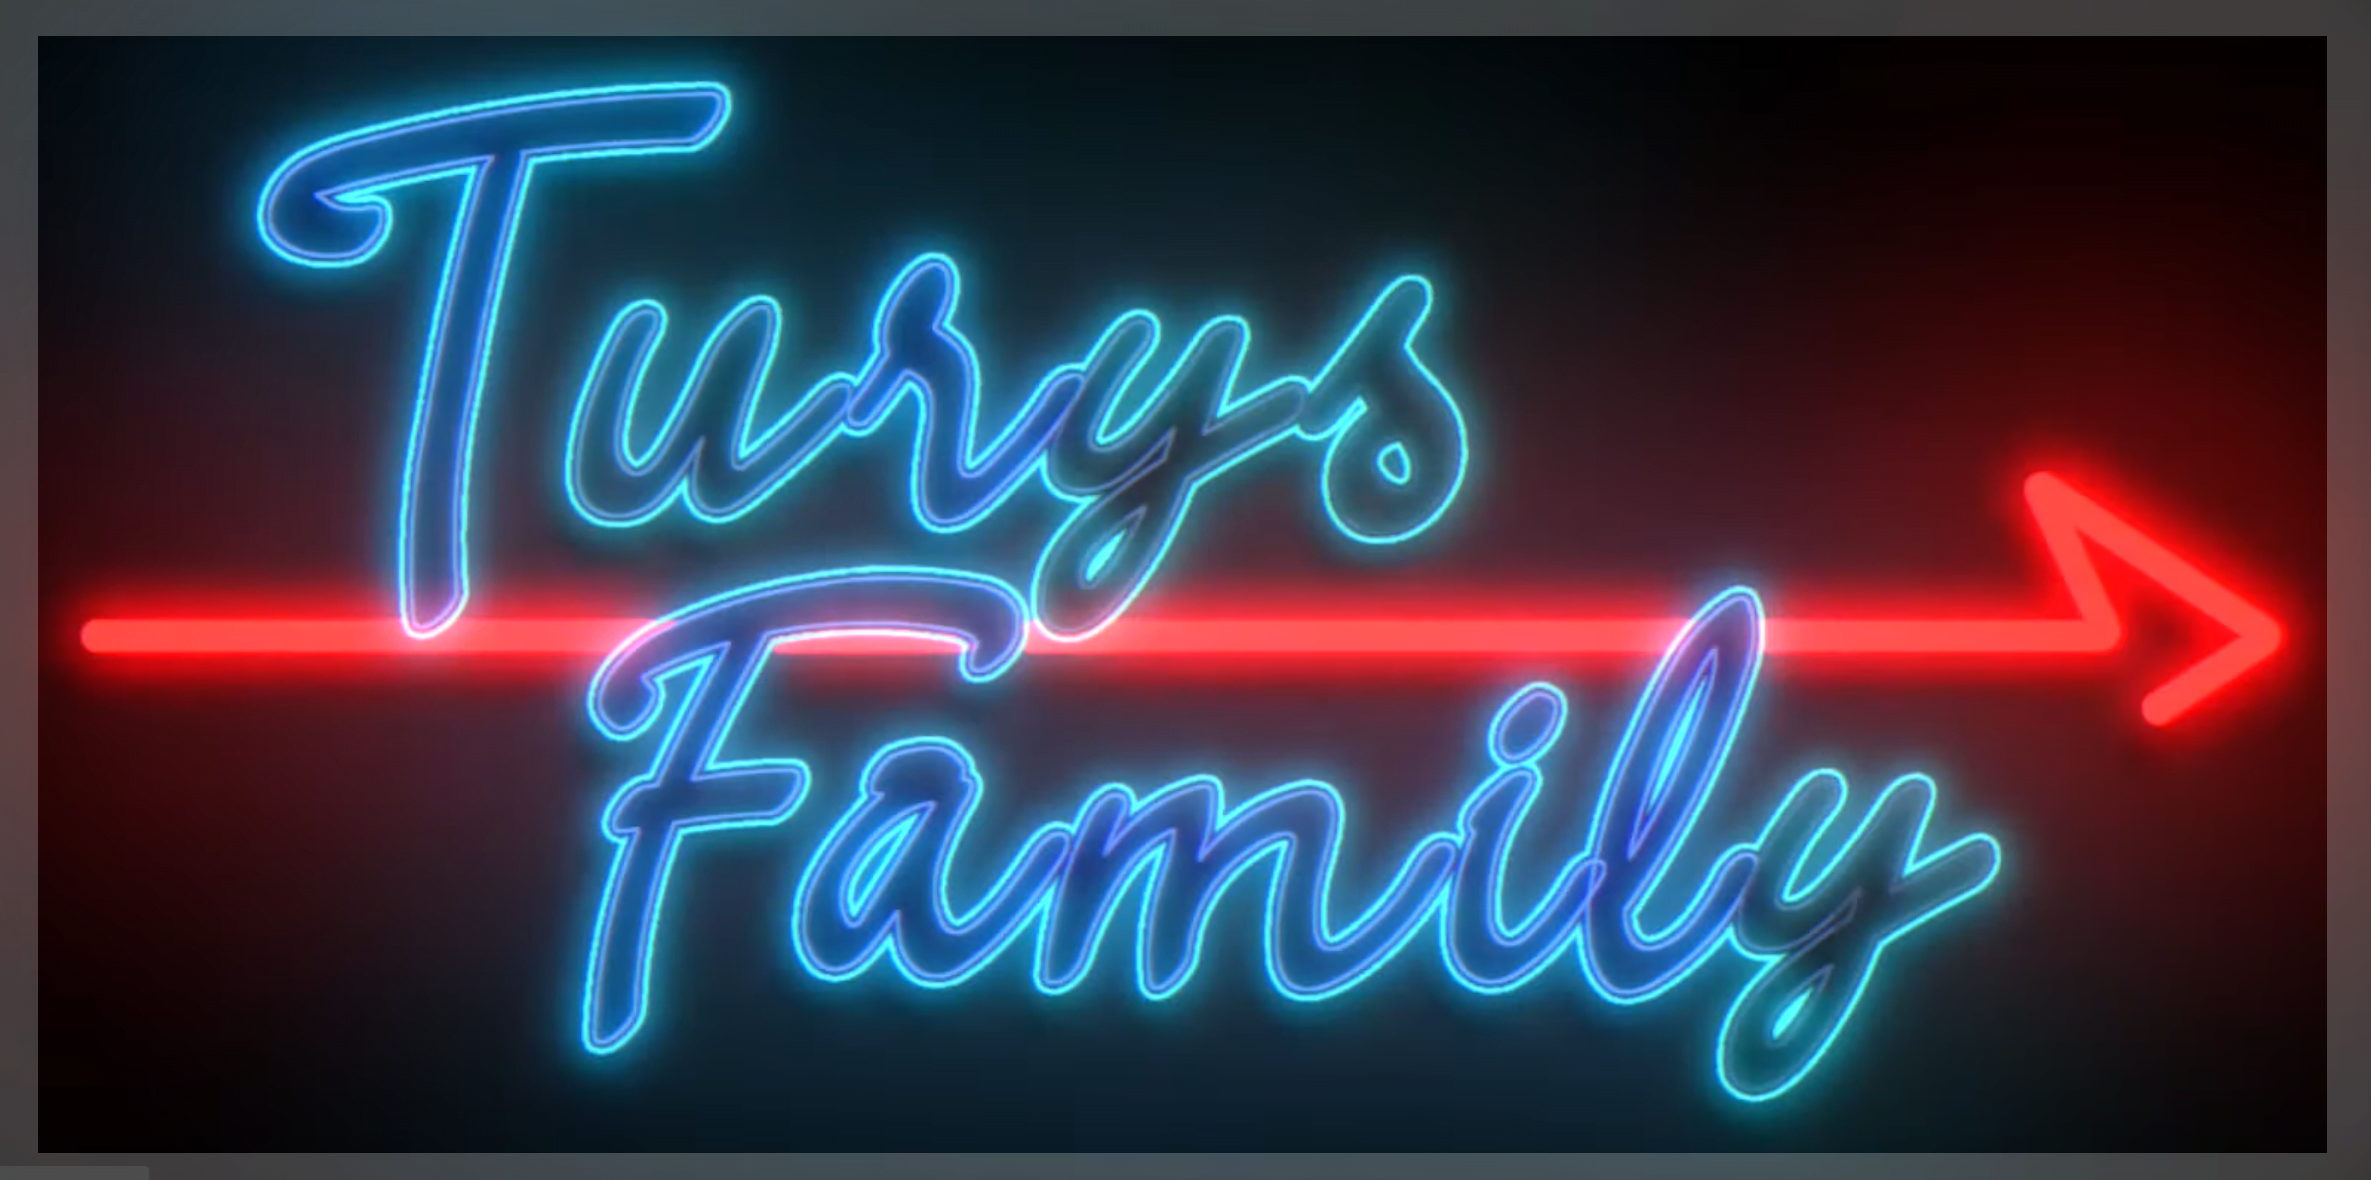 logo turys family